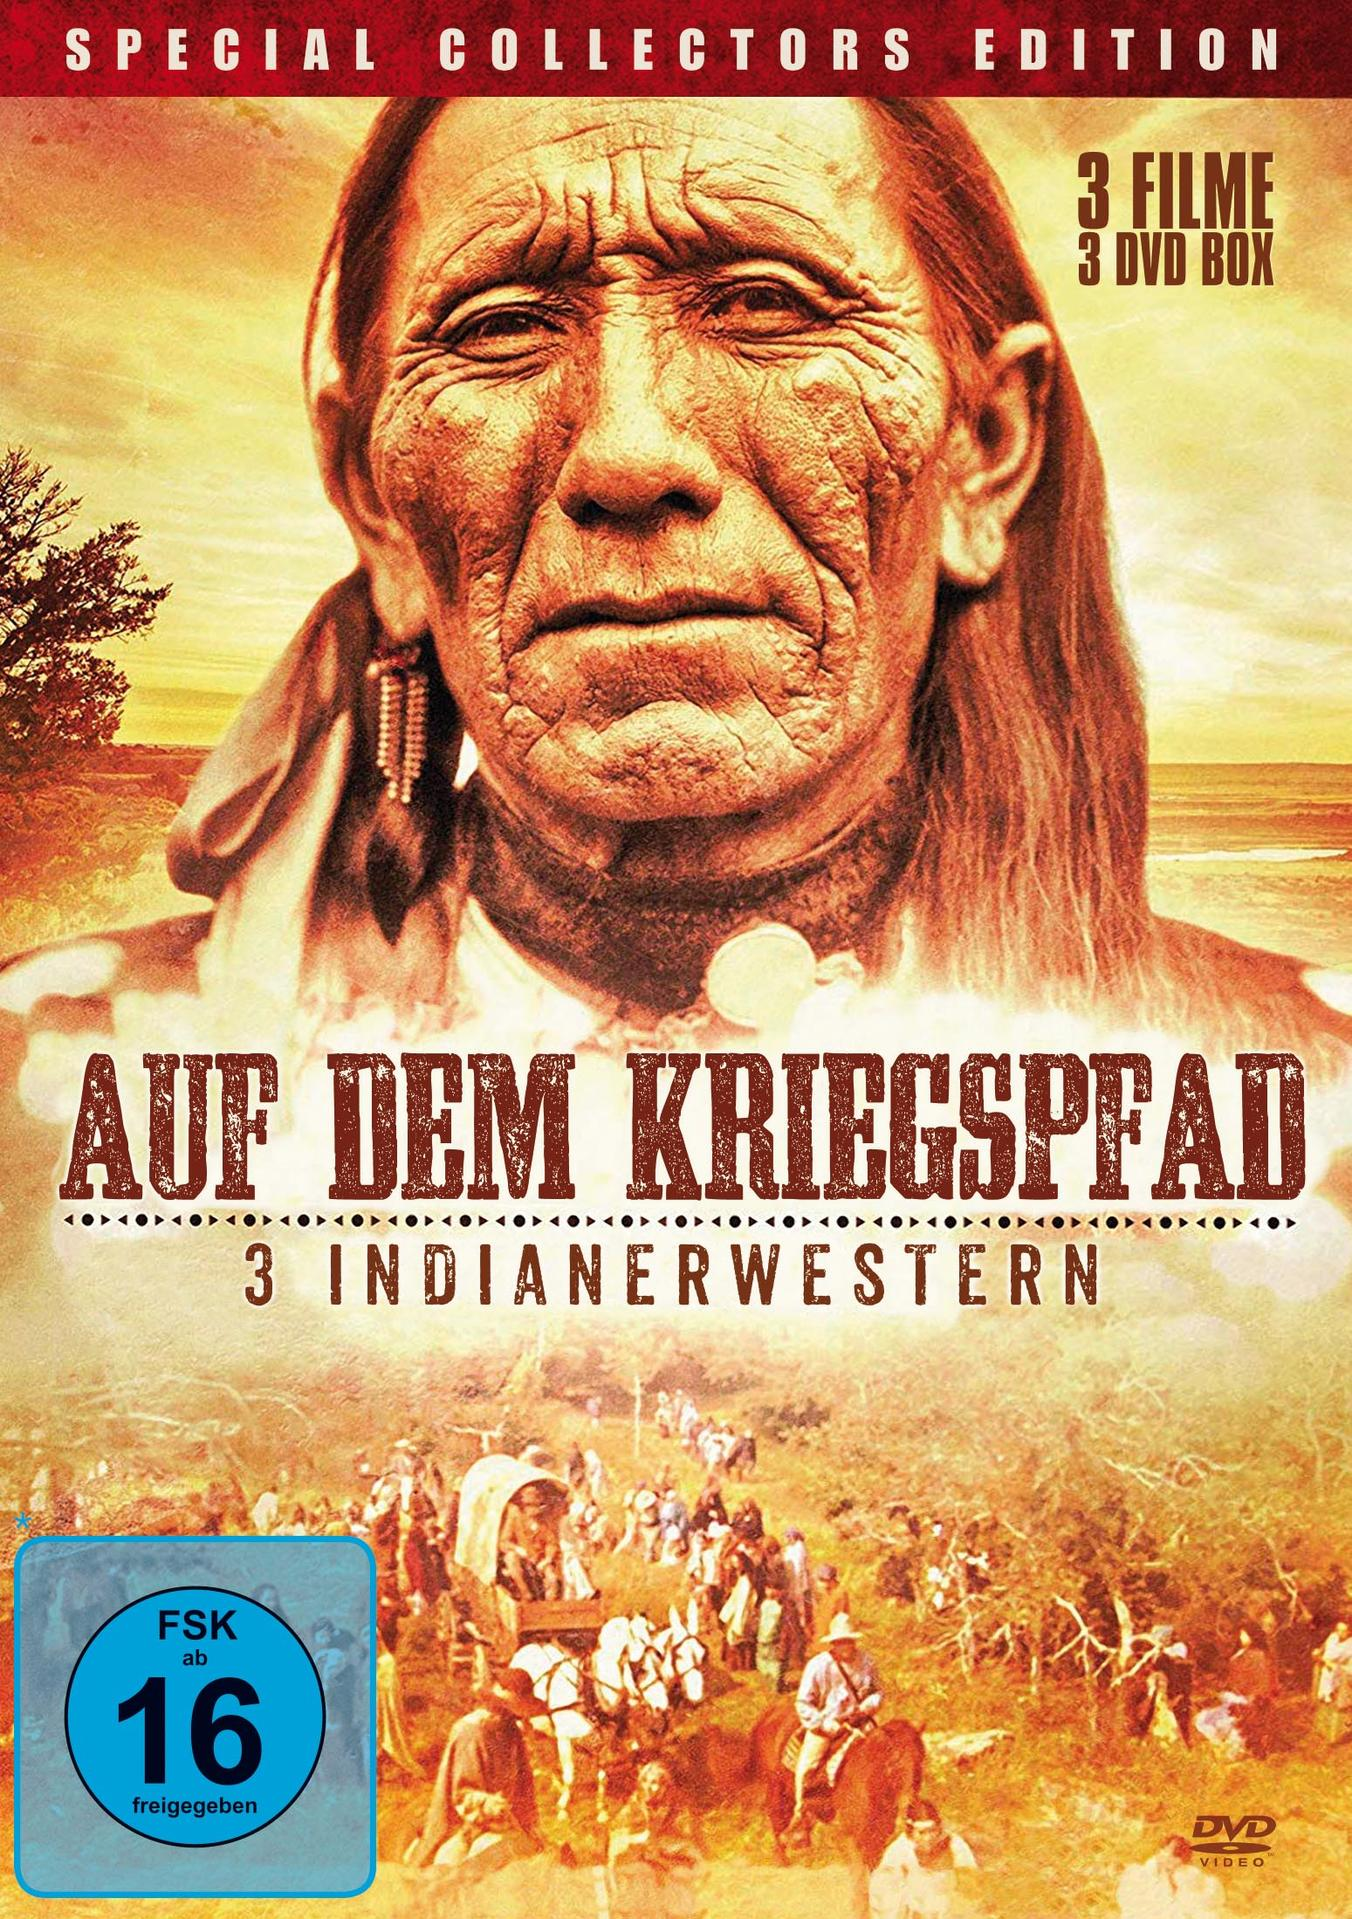 Auf Dem Indianerwestern DVD Kriegspfad-3